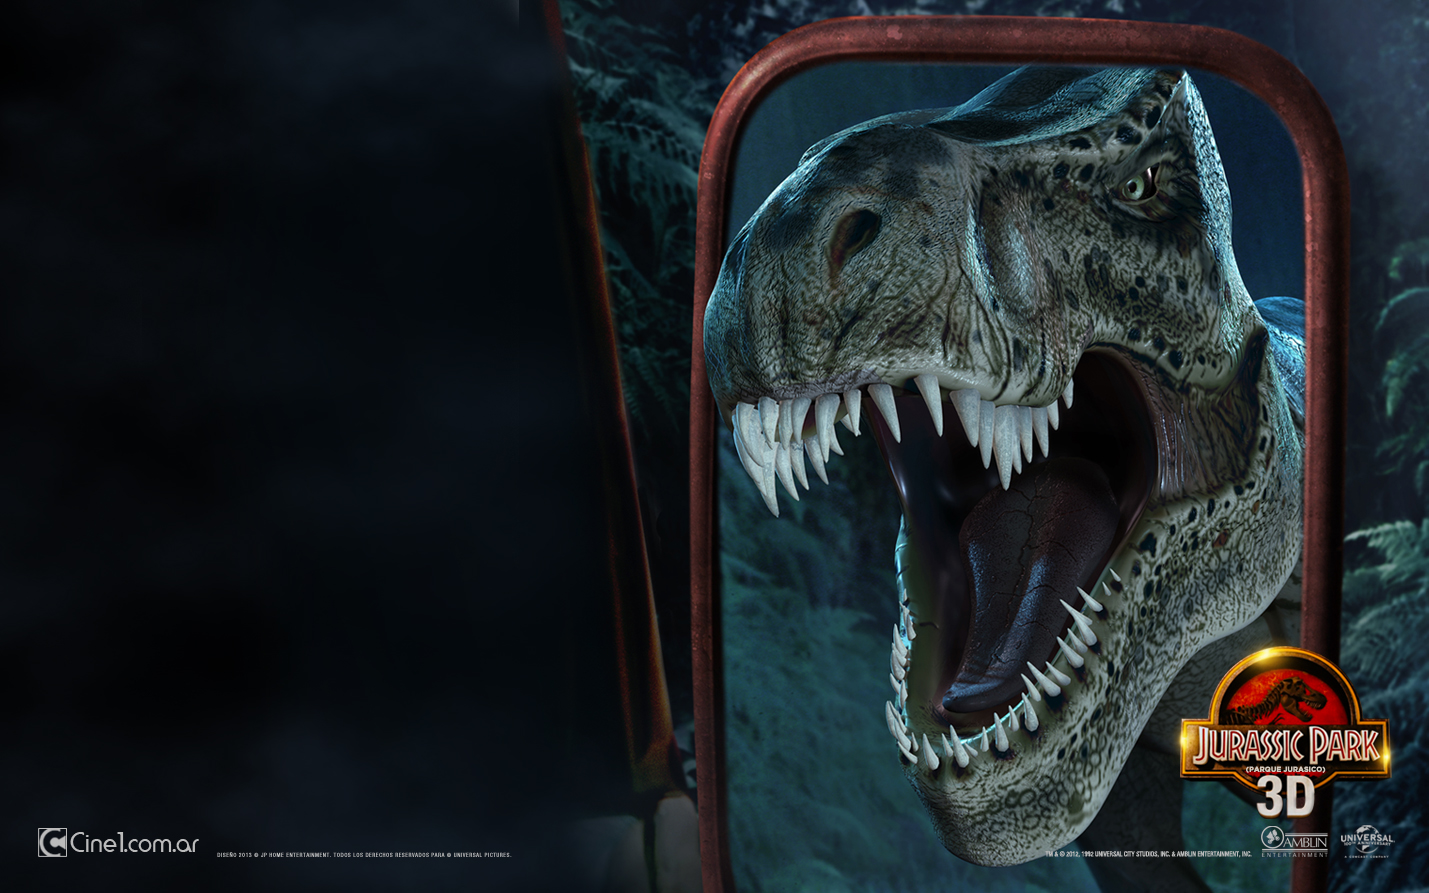 Wallpaper Latino De Jurassic Park 3d Diferentes Resoluciones